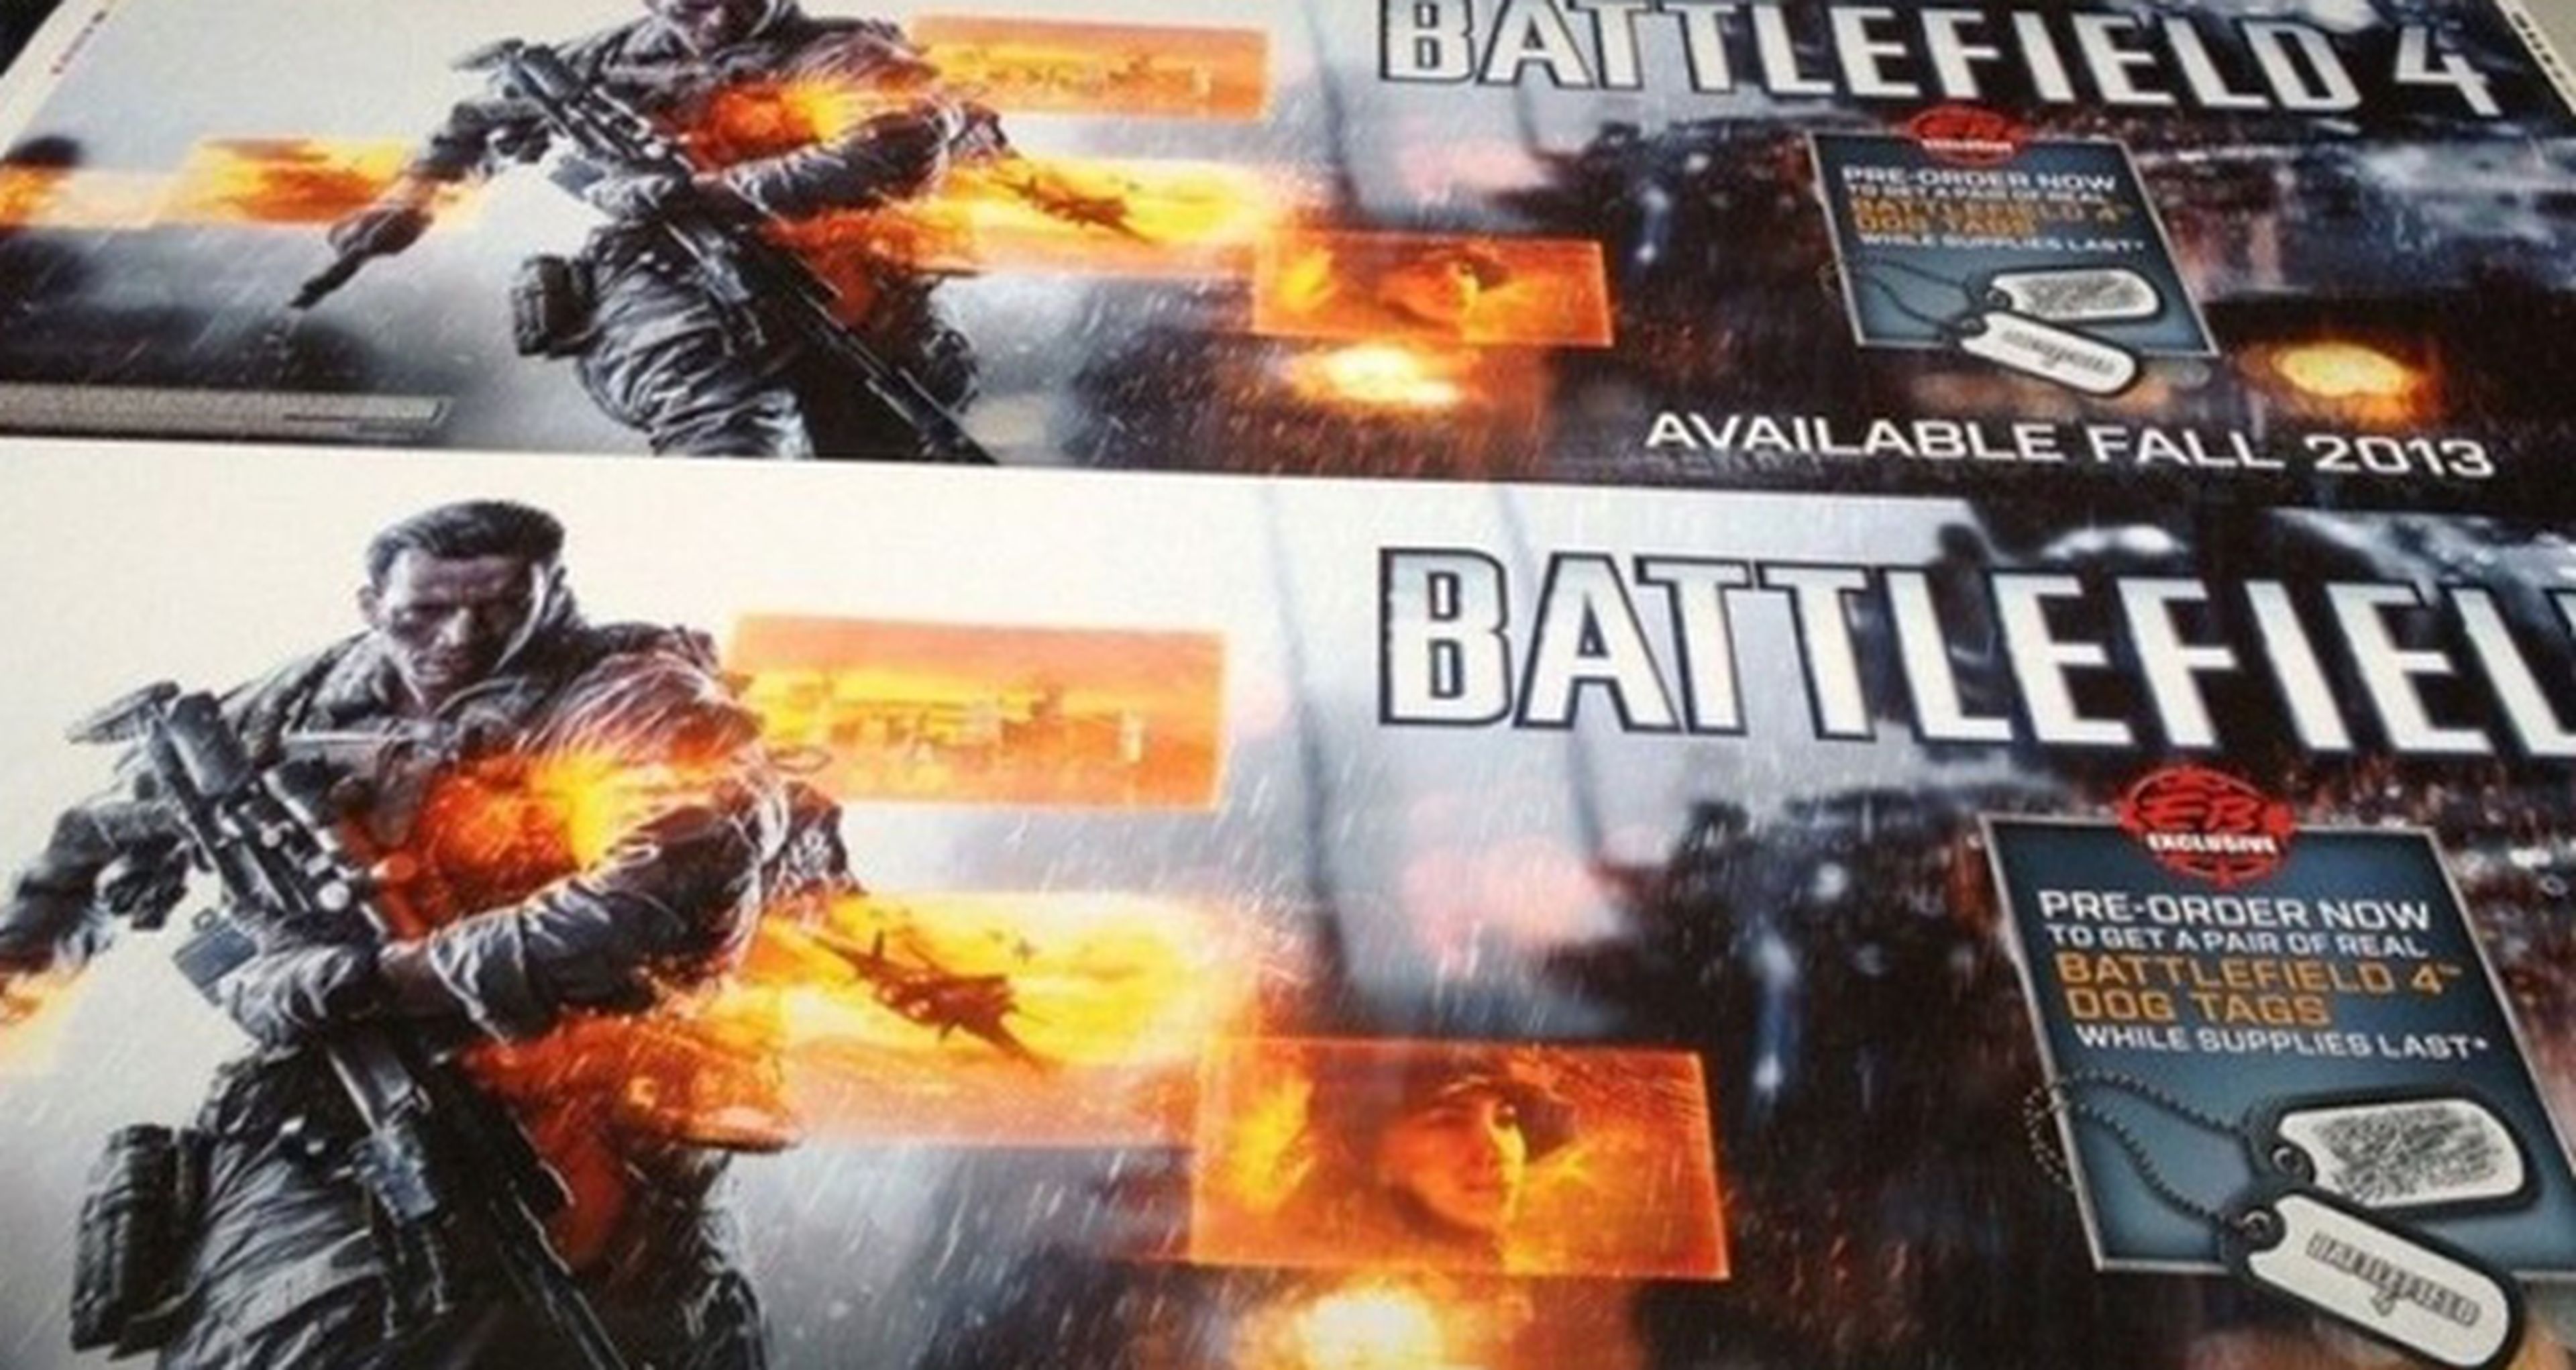 ¿Lanzamiento de Battlefield 4 en otoño?